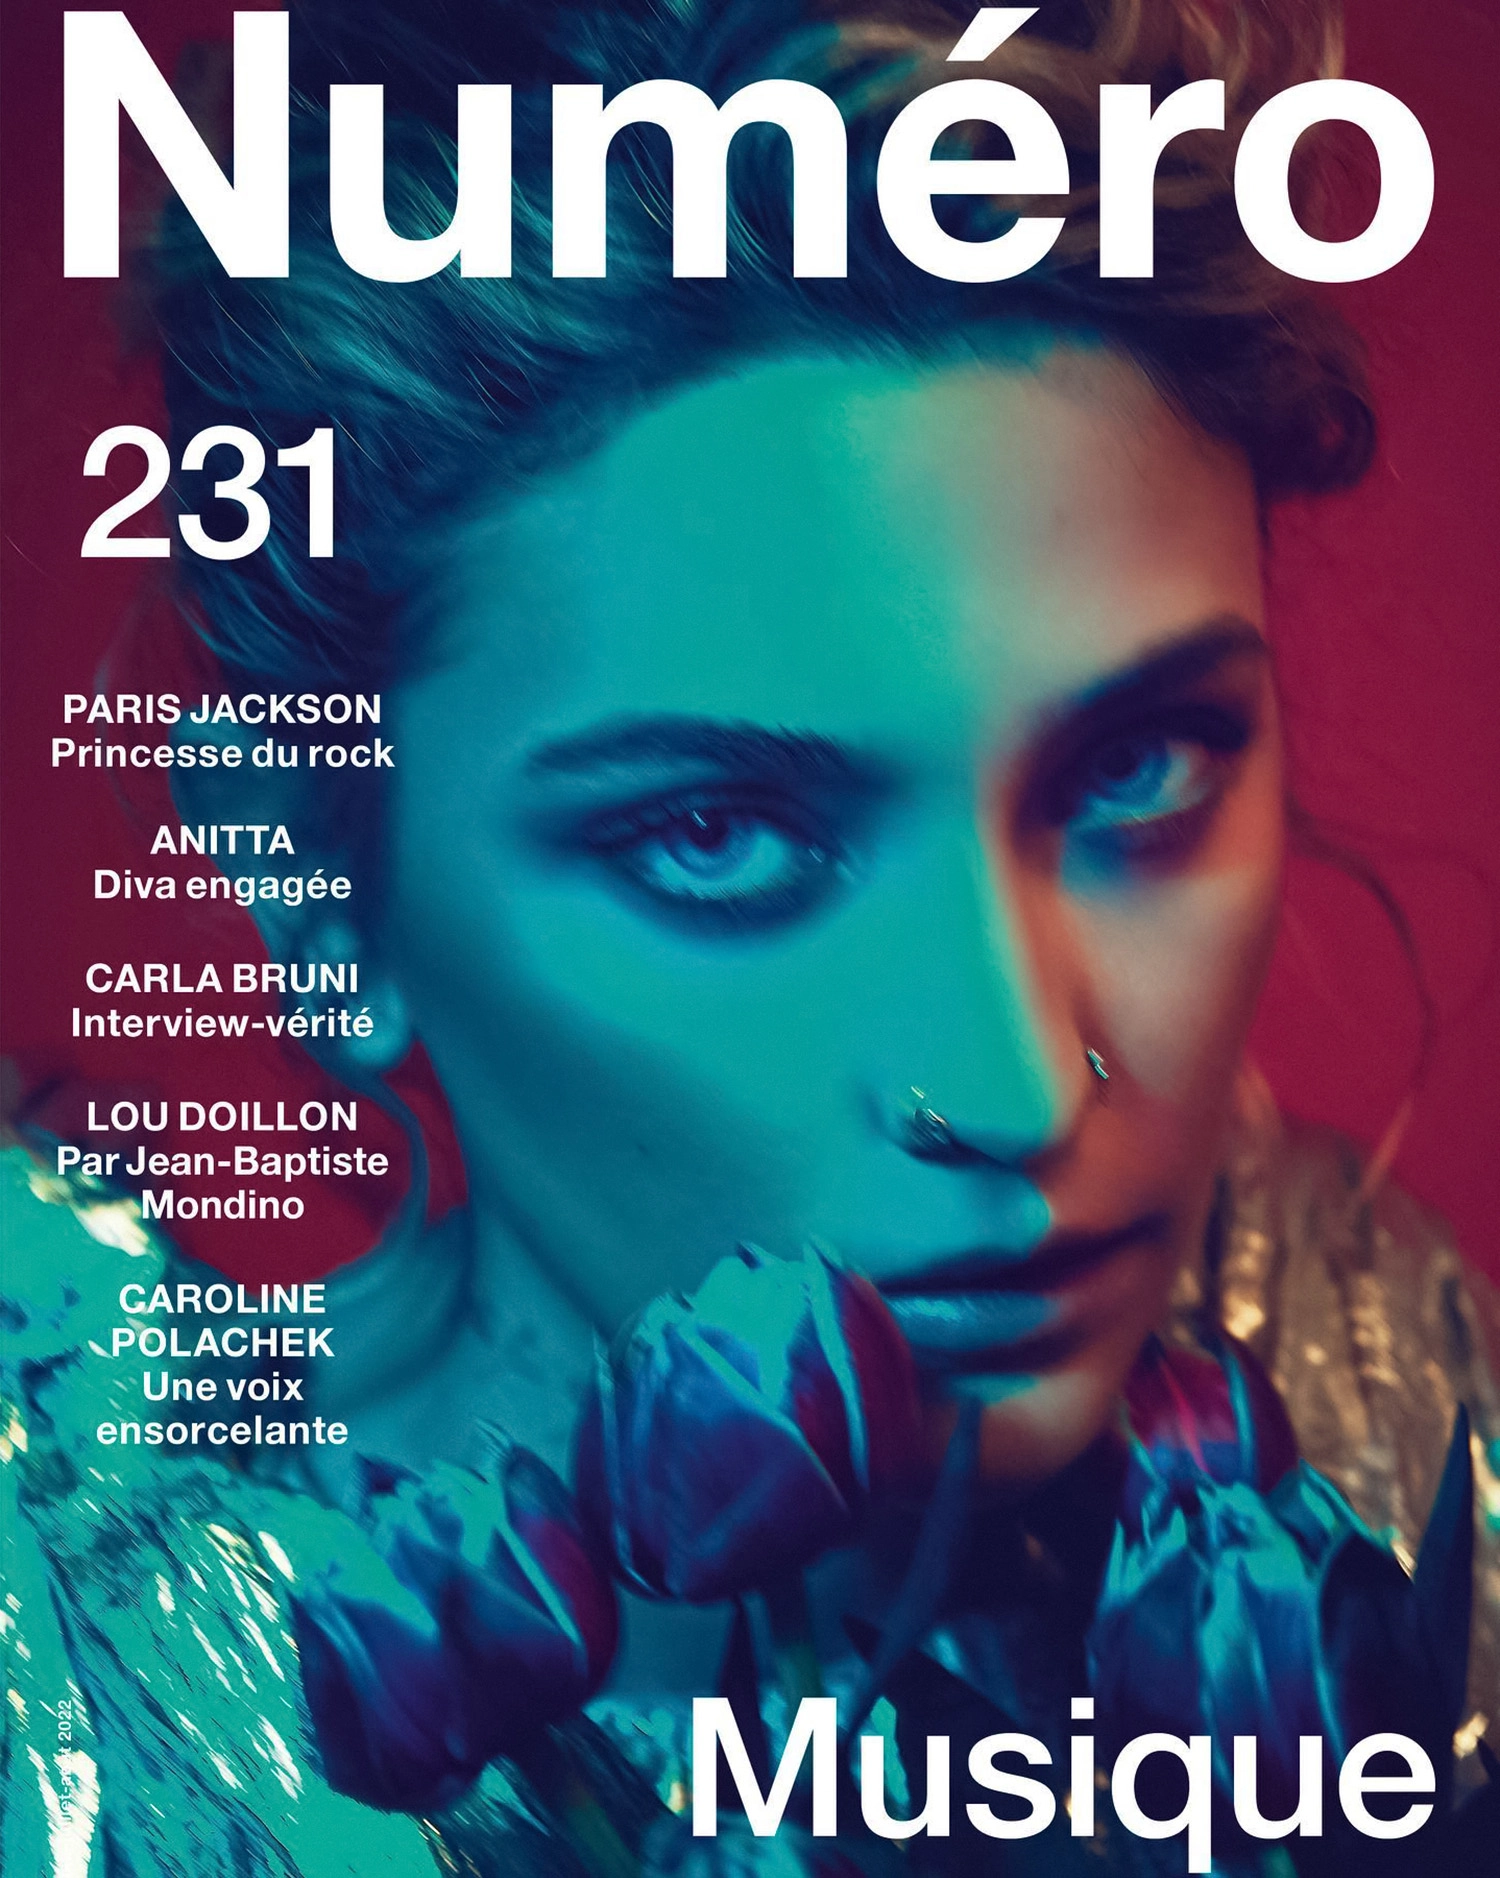 Paris Jackson covers Numéro June/July/August 2022 by Sofia Sanchez & Mauro Mongiello